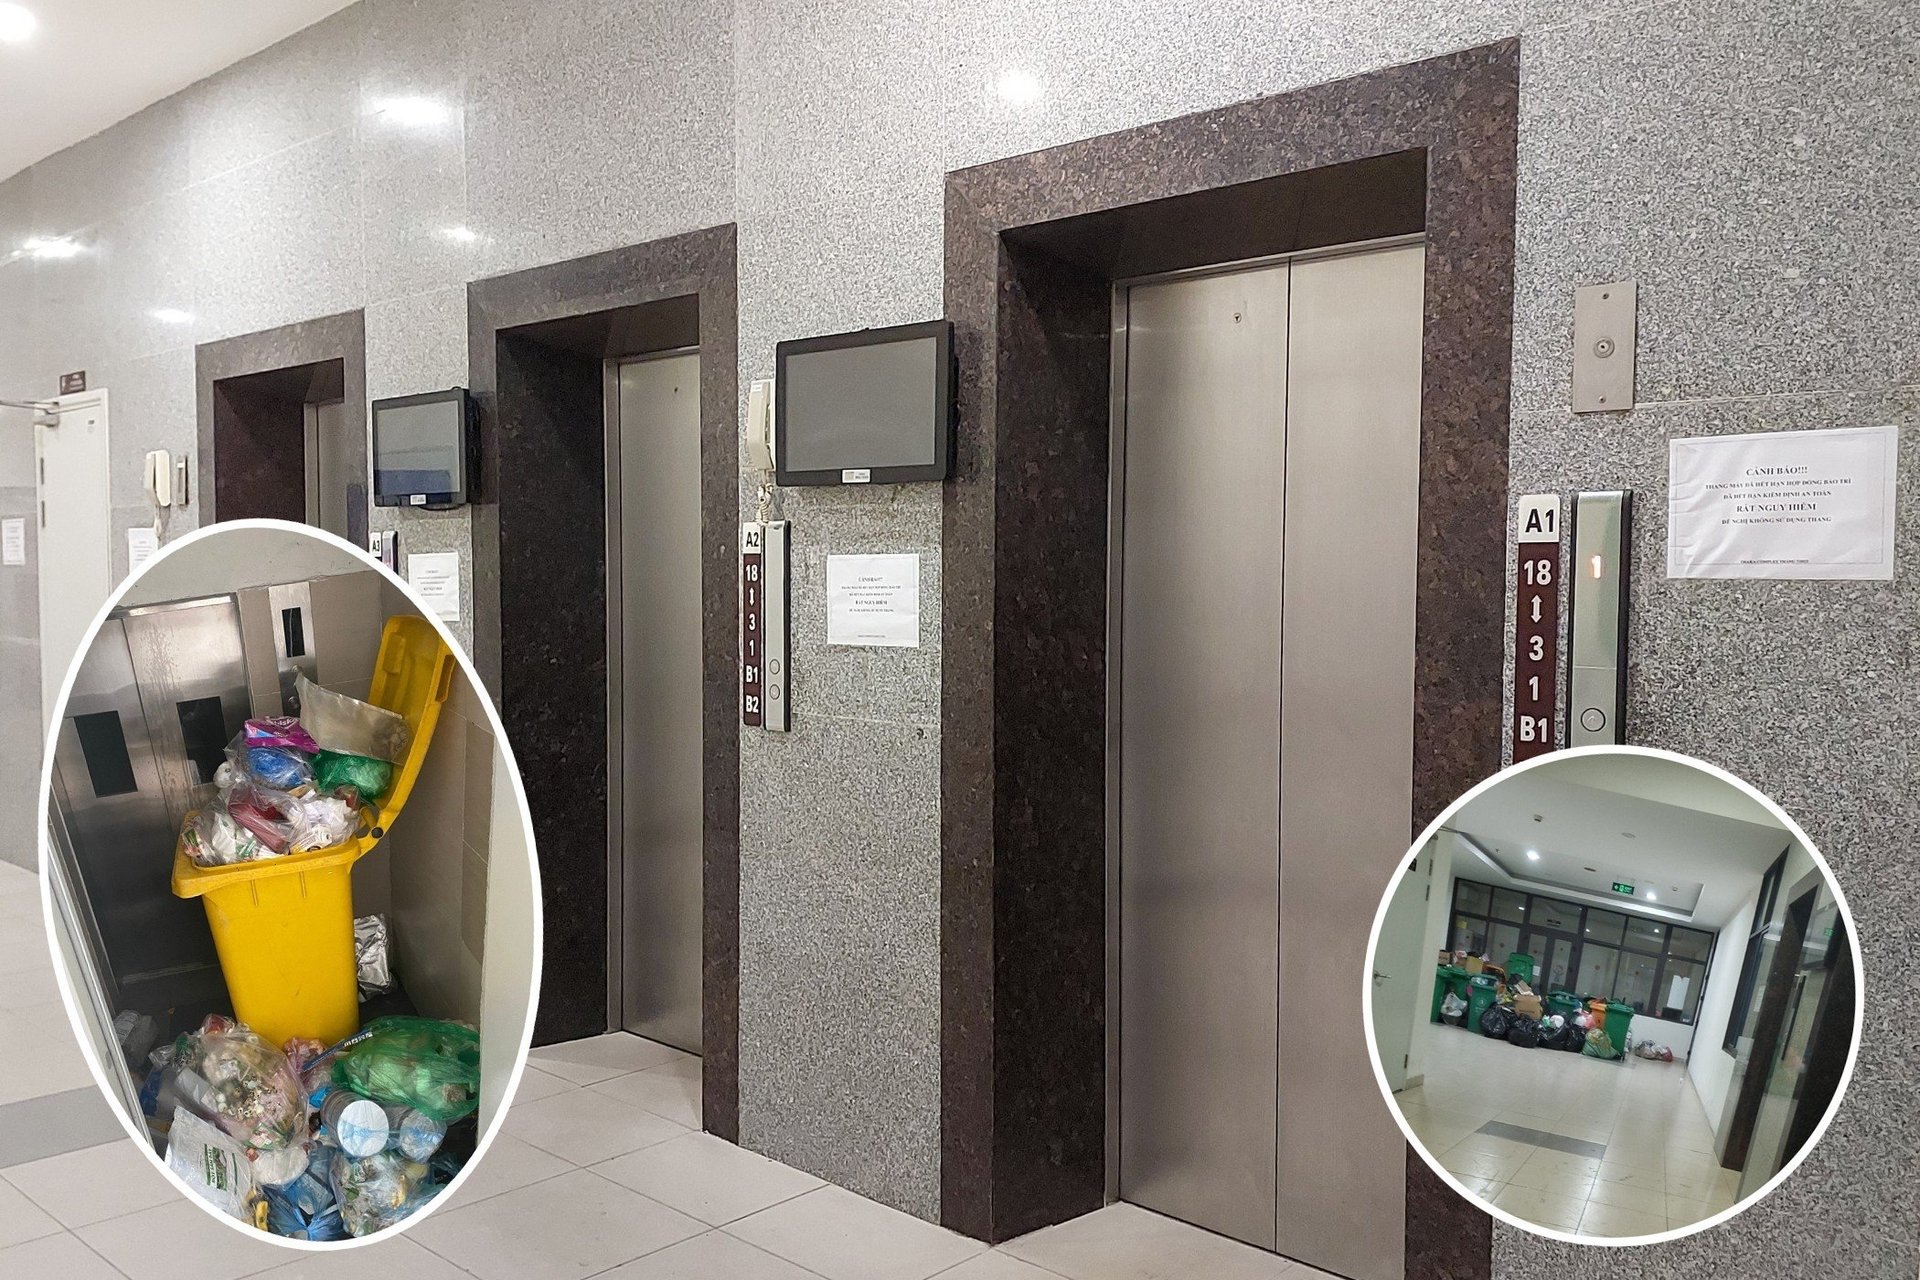 5/6 thang máy tại toà B chung cư Osaka Complex đã bị khoá, dừng hoạt động, thang rác cùng việc thu gom rác thải cũng không được xử lý khiến hàng trăm hộ dân bức xúc. Ảnh: Văn Việt.